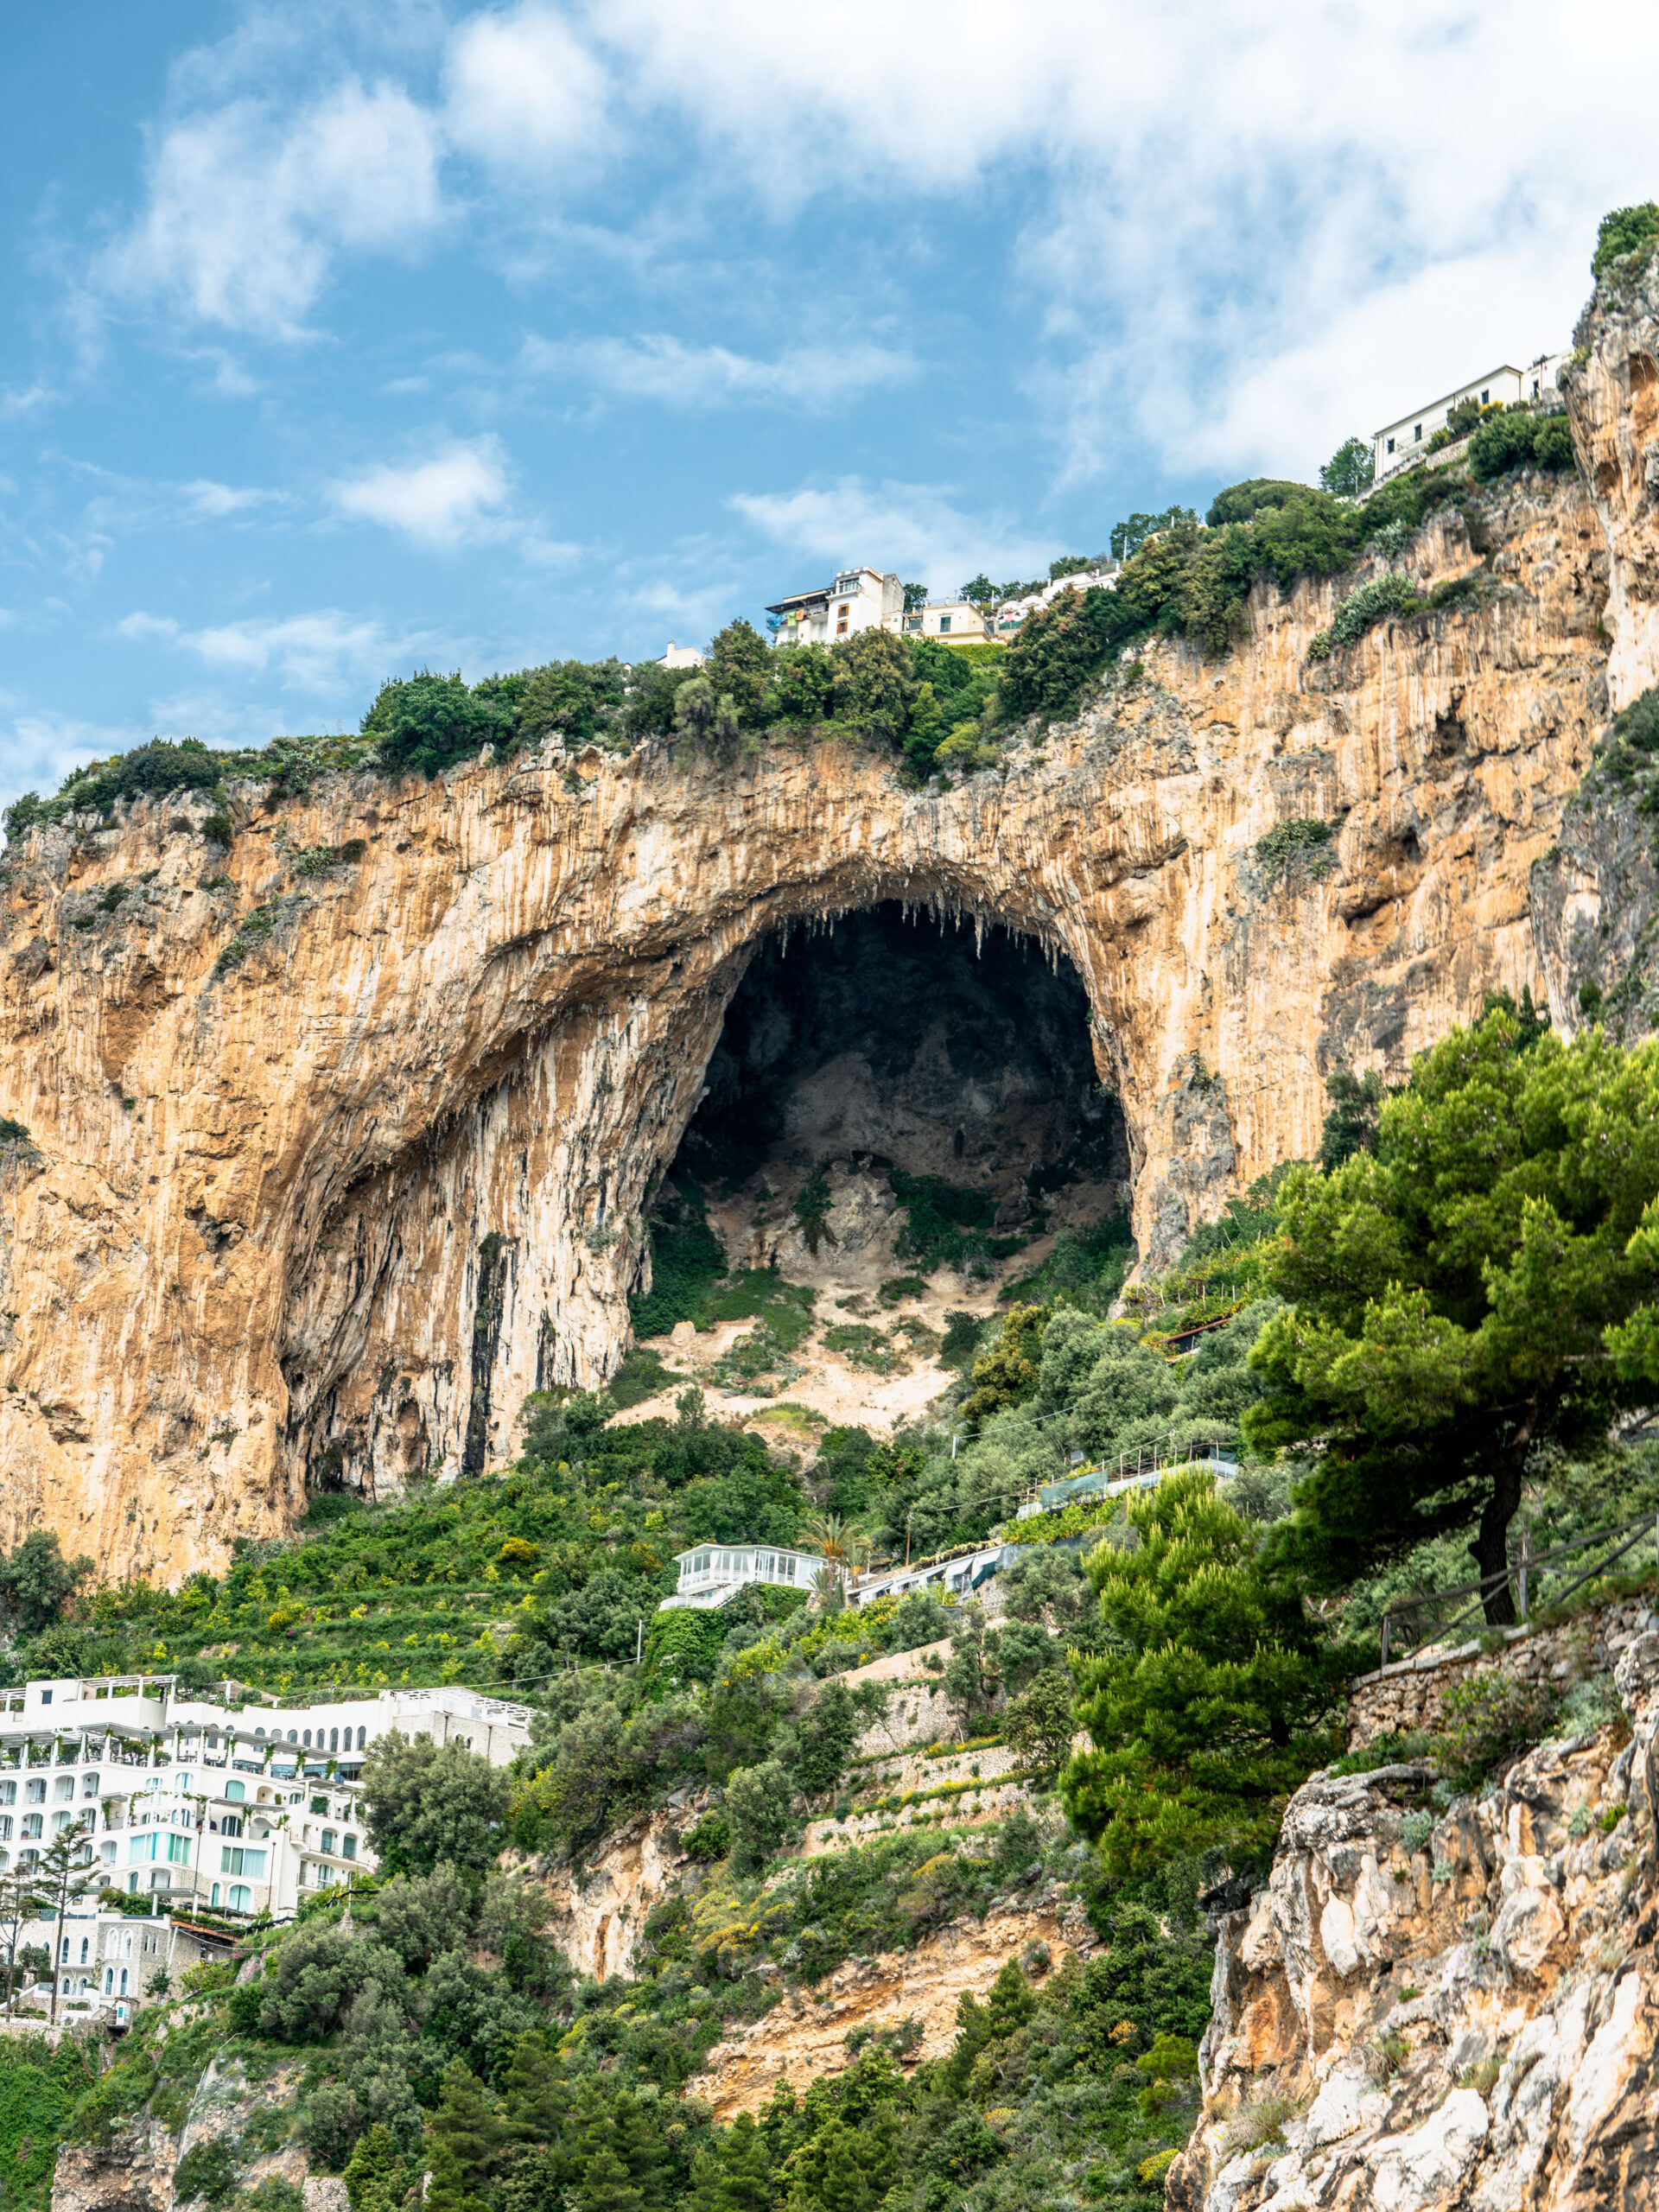 Amalfi Coast itinerary